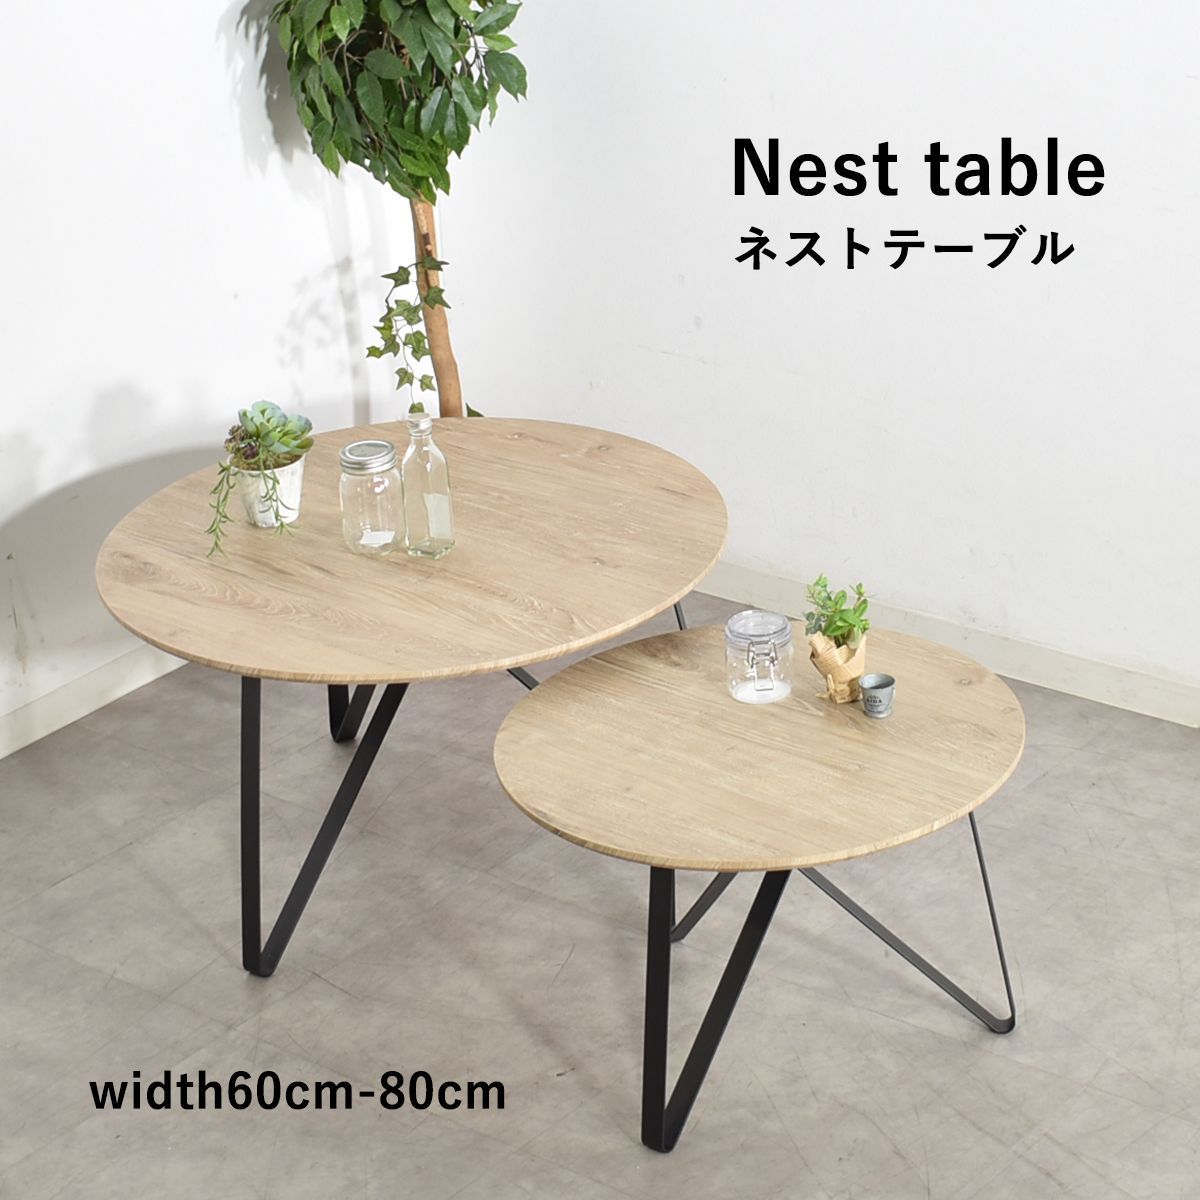 センターテーブル 丸 ネストテーブル 80cm 60cm おしゃれ 北欧 テーブル ローテーブル 丸型 サイドテーブル 2個セット ツインテーブル  センターテーブル大小